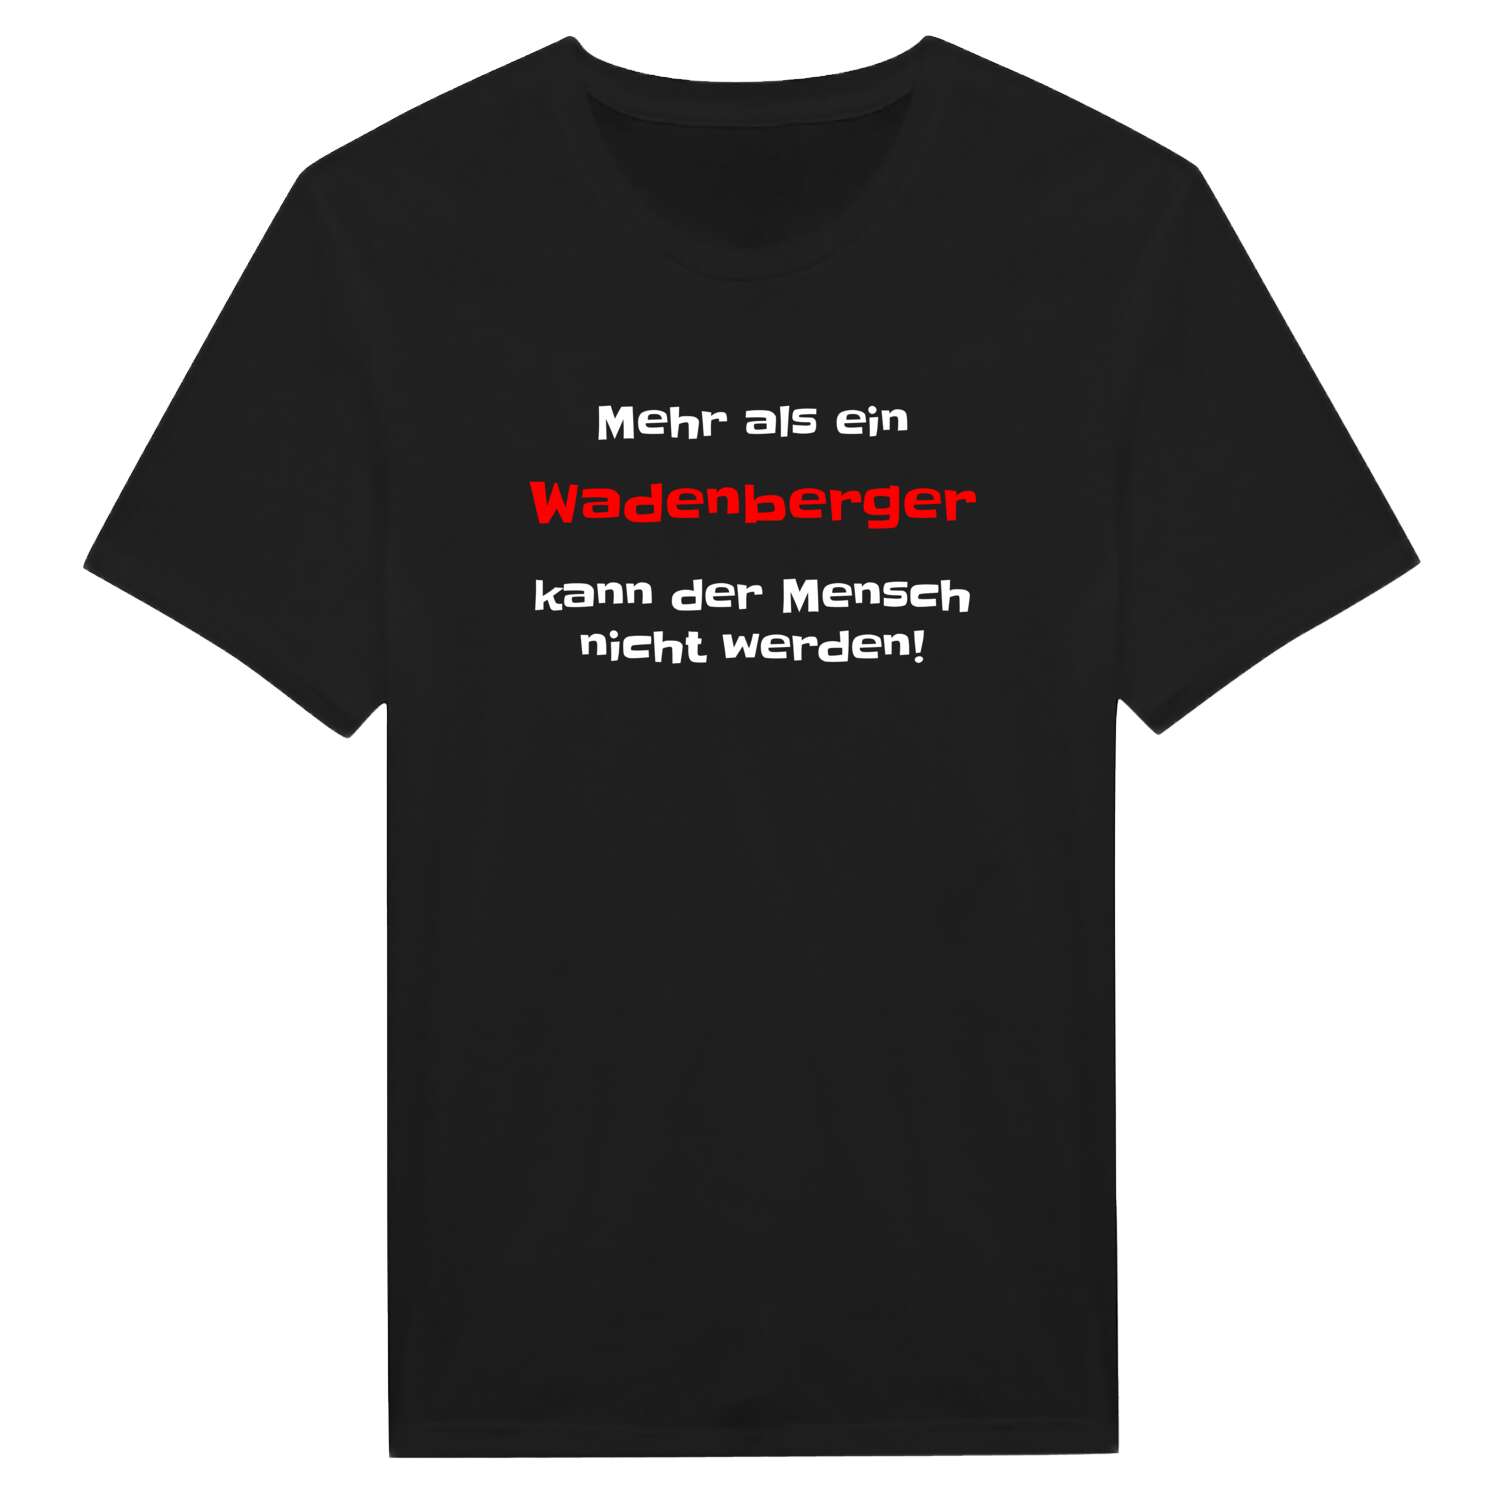 Wadenberg T-Shirt »Mehr als ein«